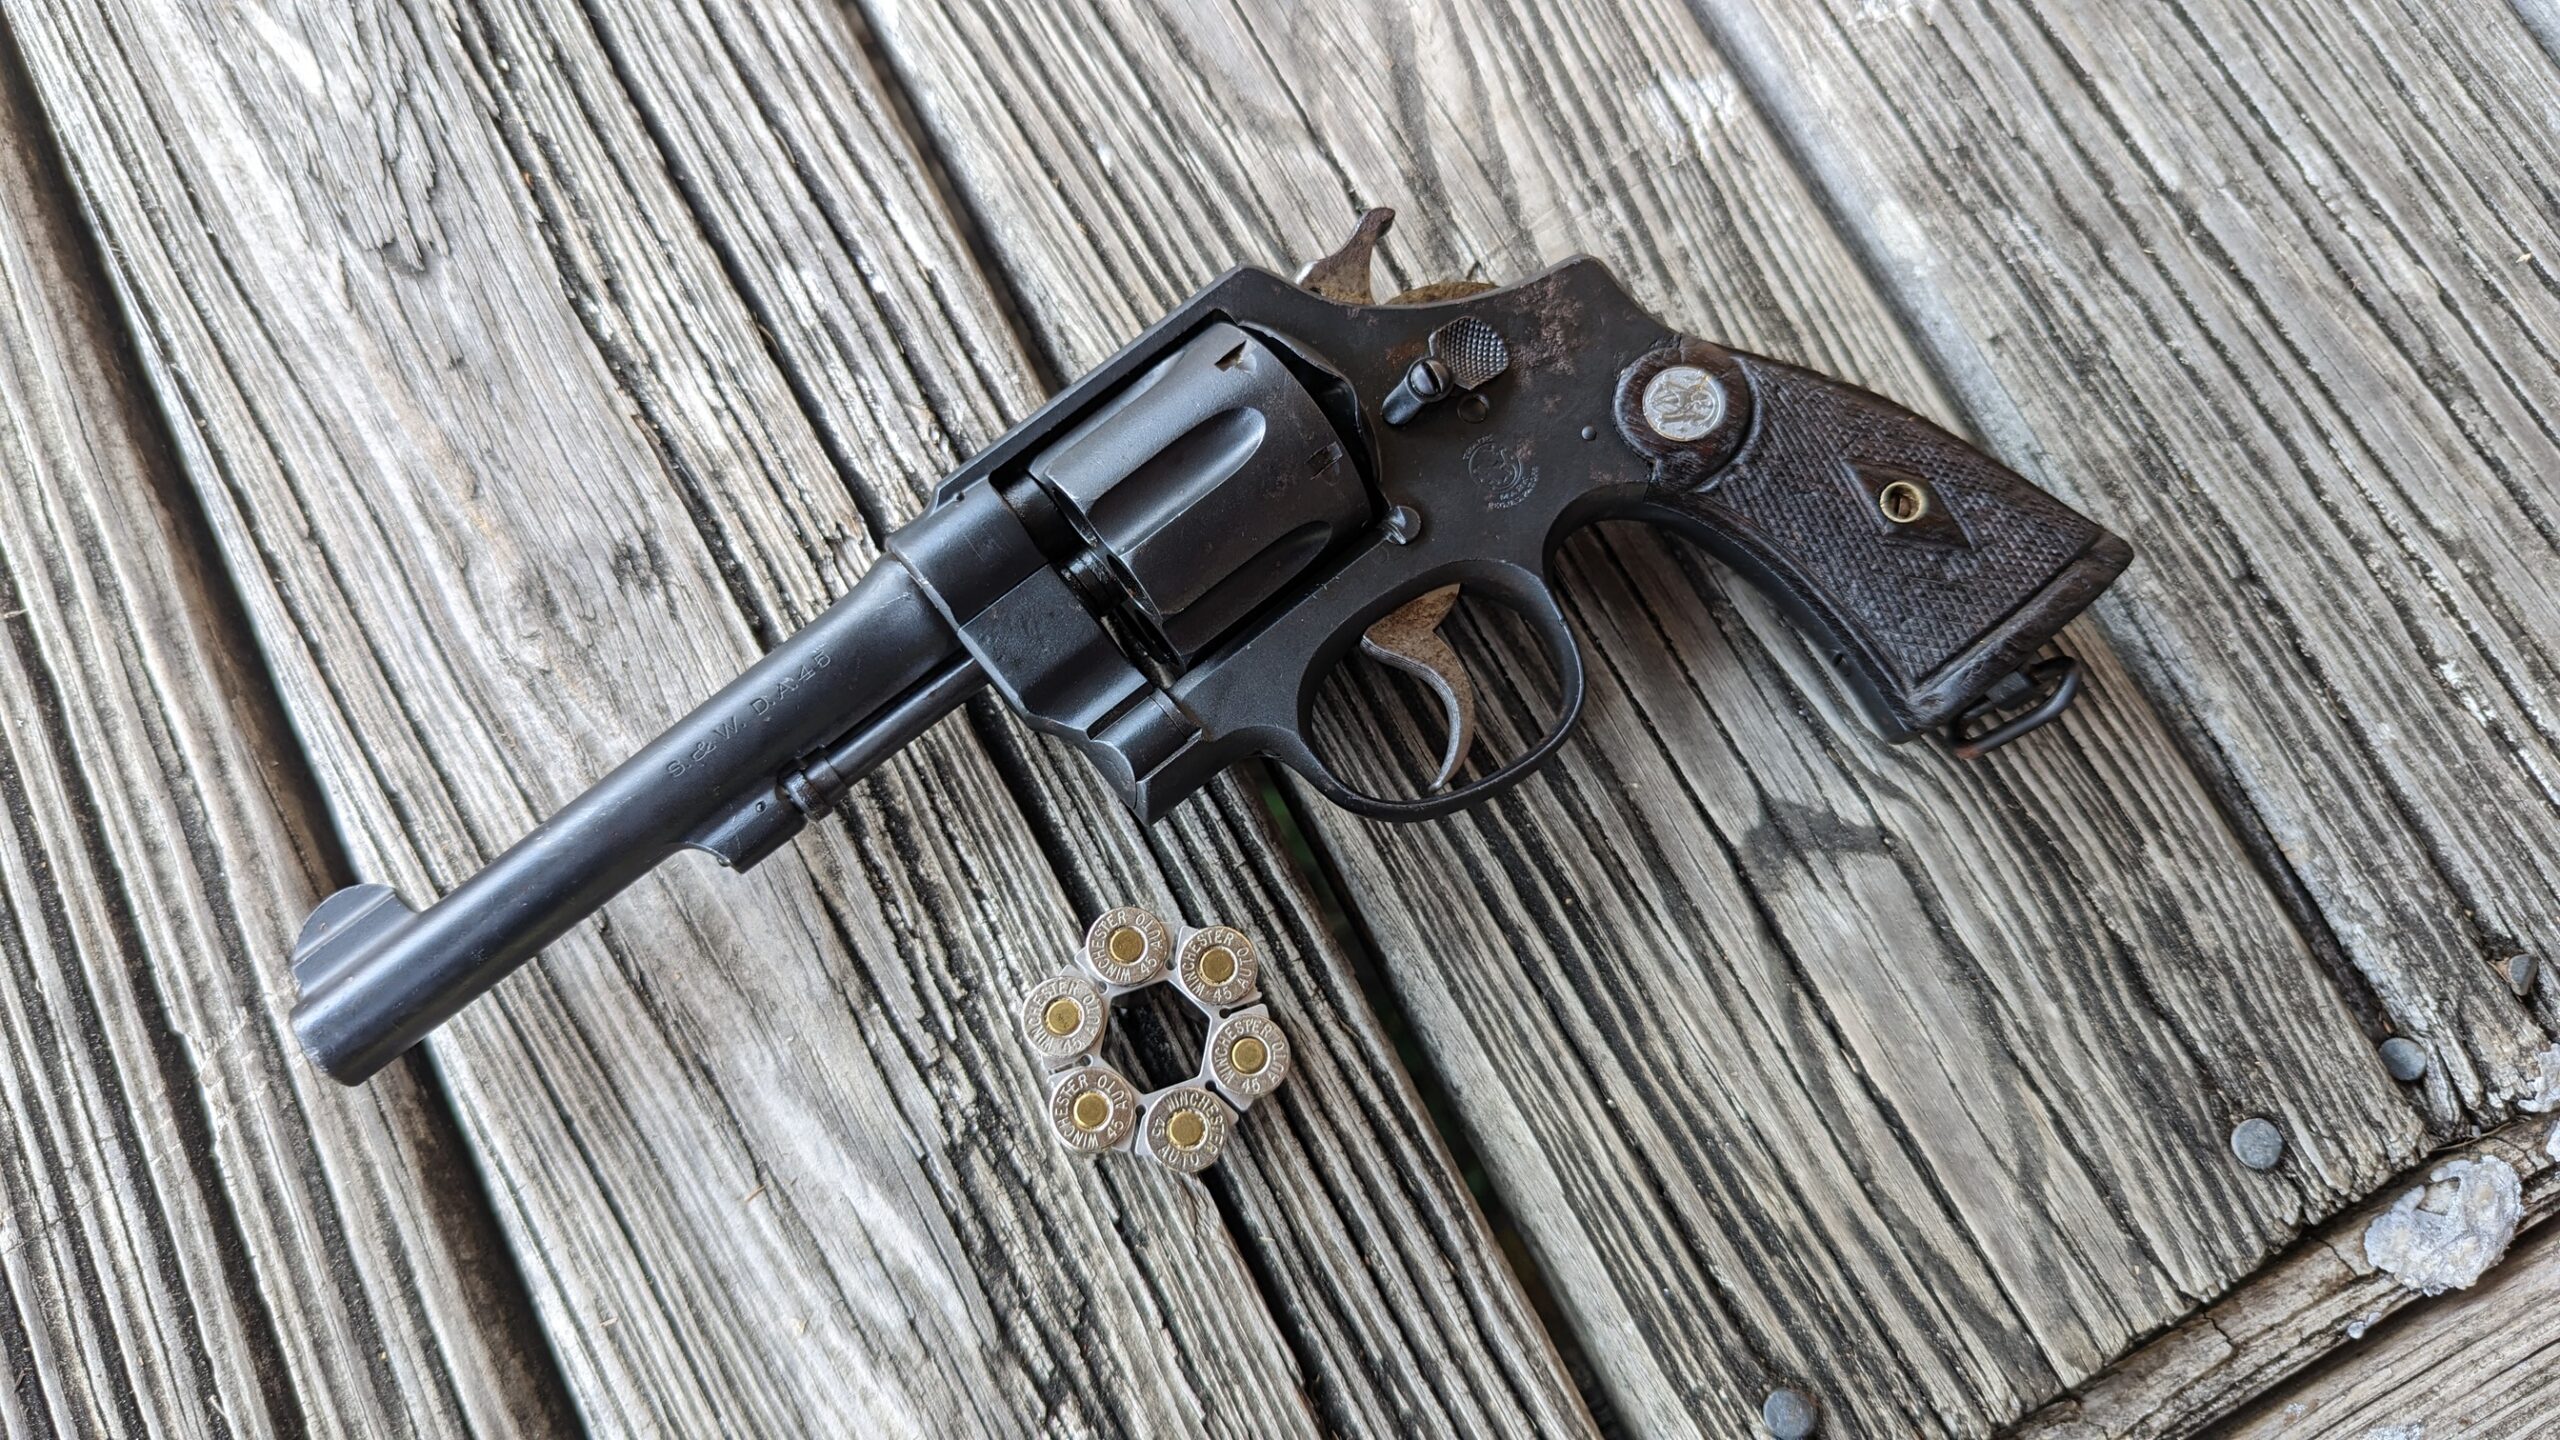 M1917 S&W revolver